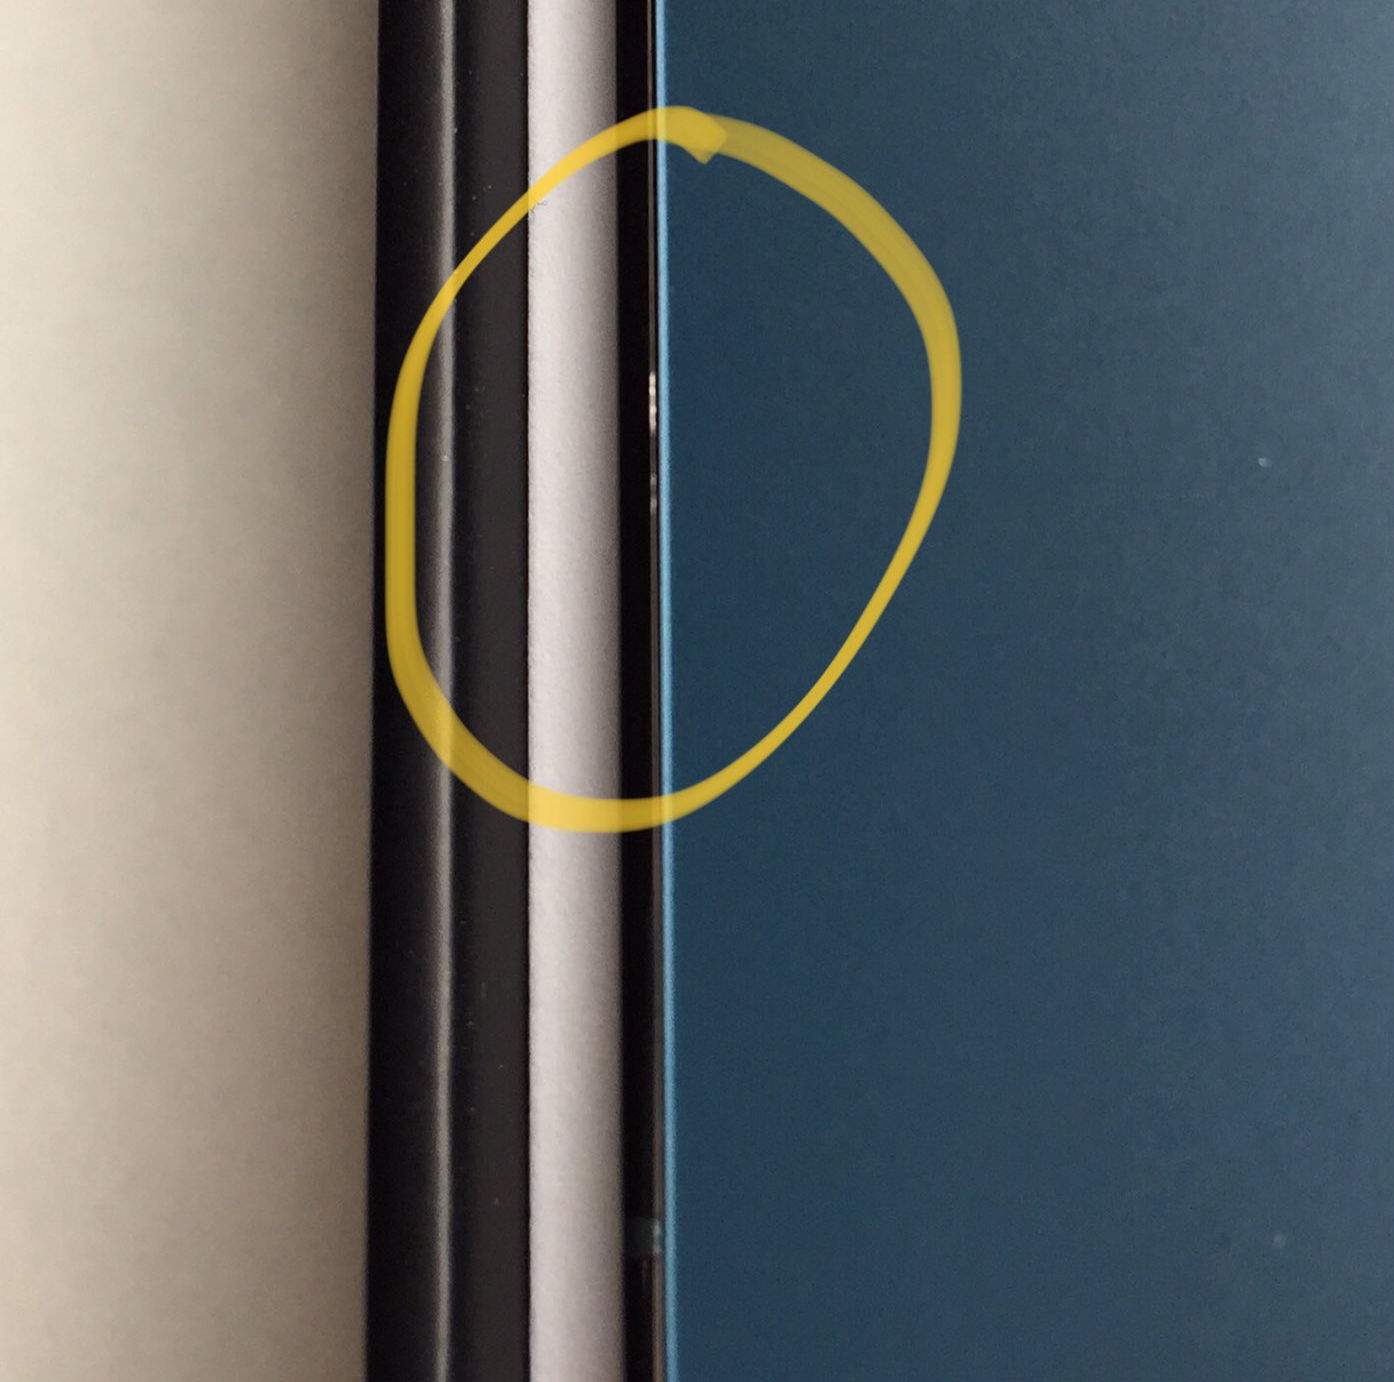 Iphone 12 Proのフレームに傷が付く報告多数 購入時に傷が付いていたという例も Ipod Love